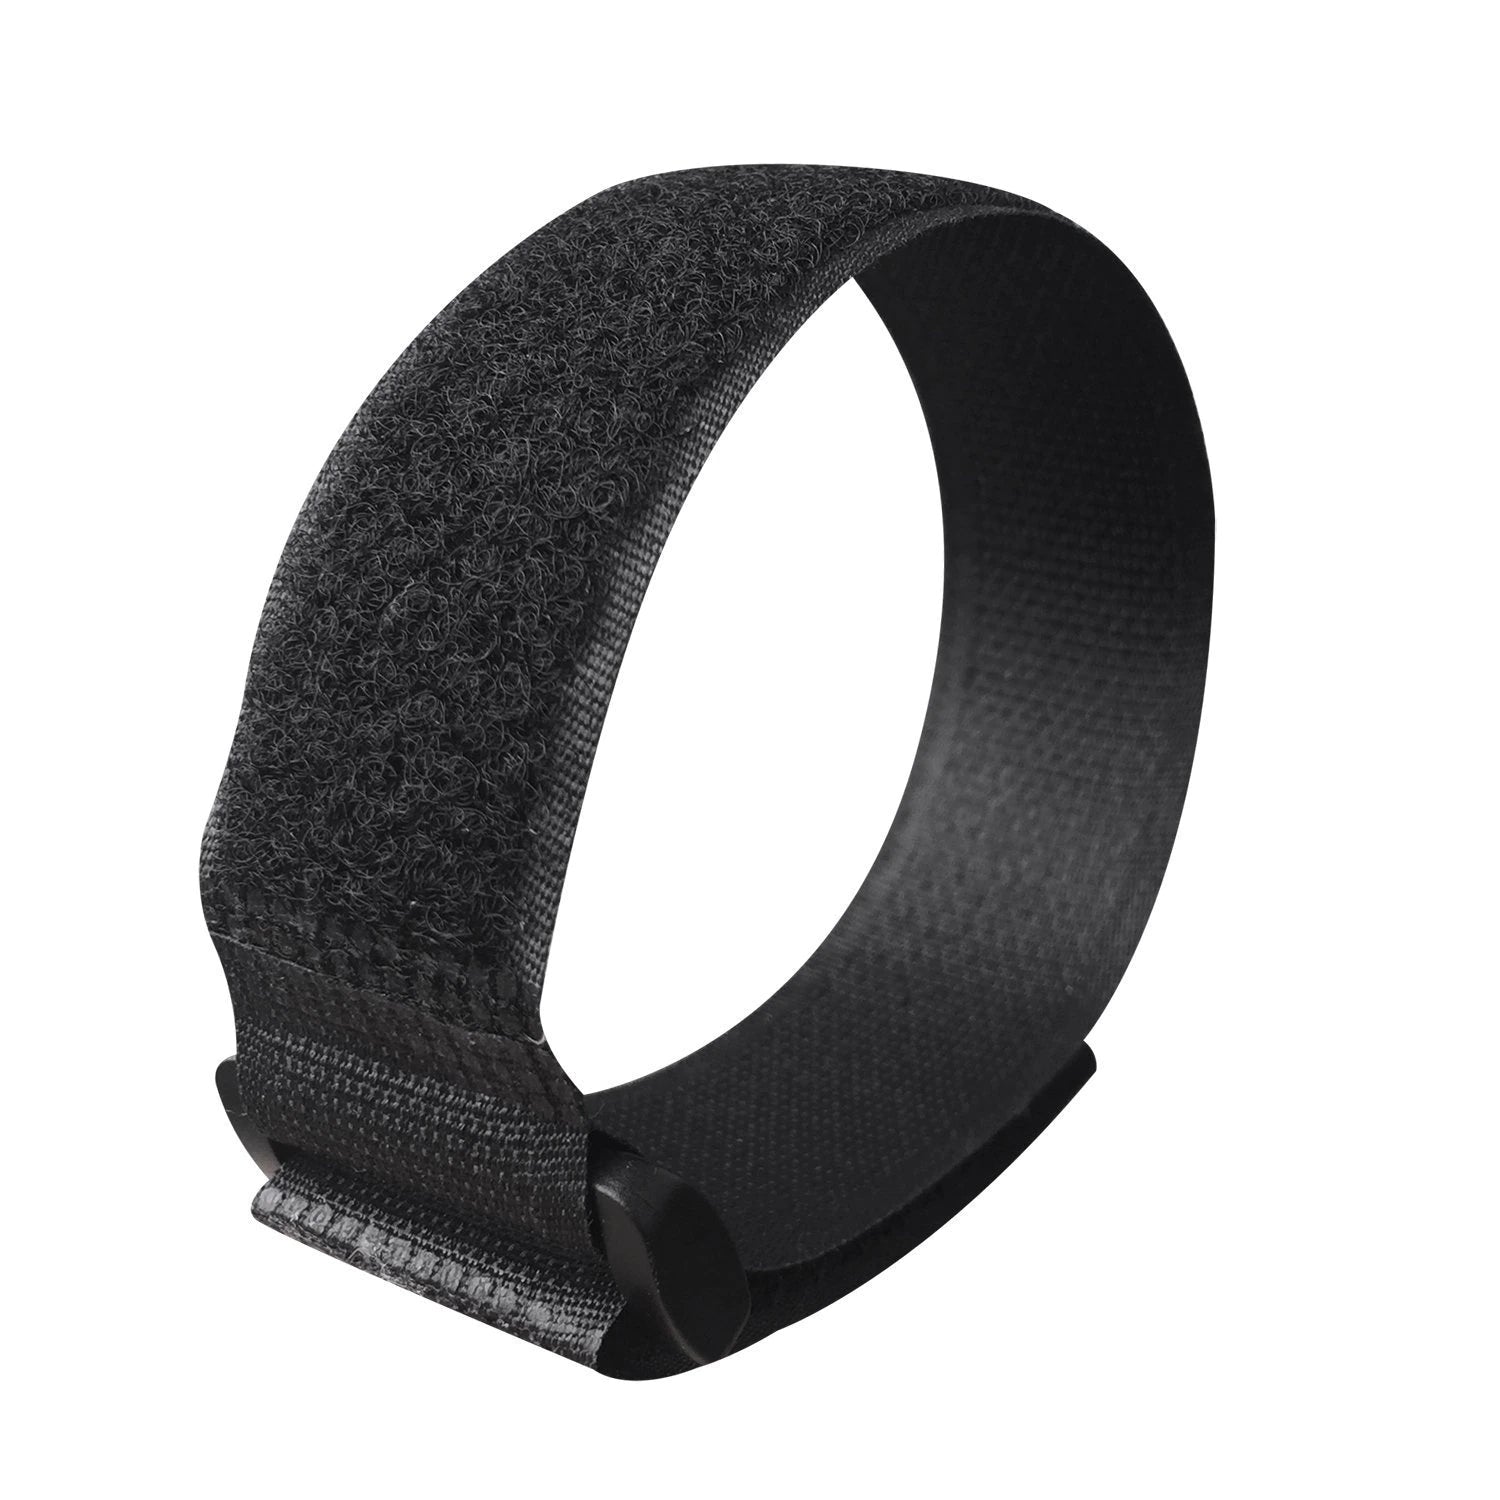 Strap 3x40cm Velcro fastener, Black